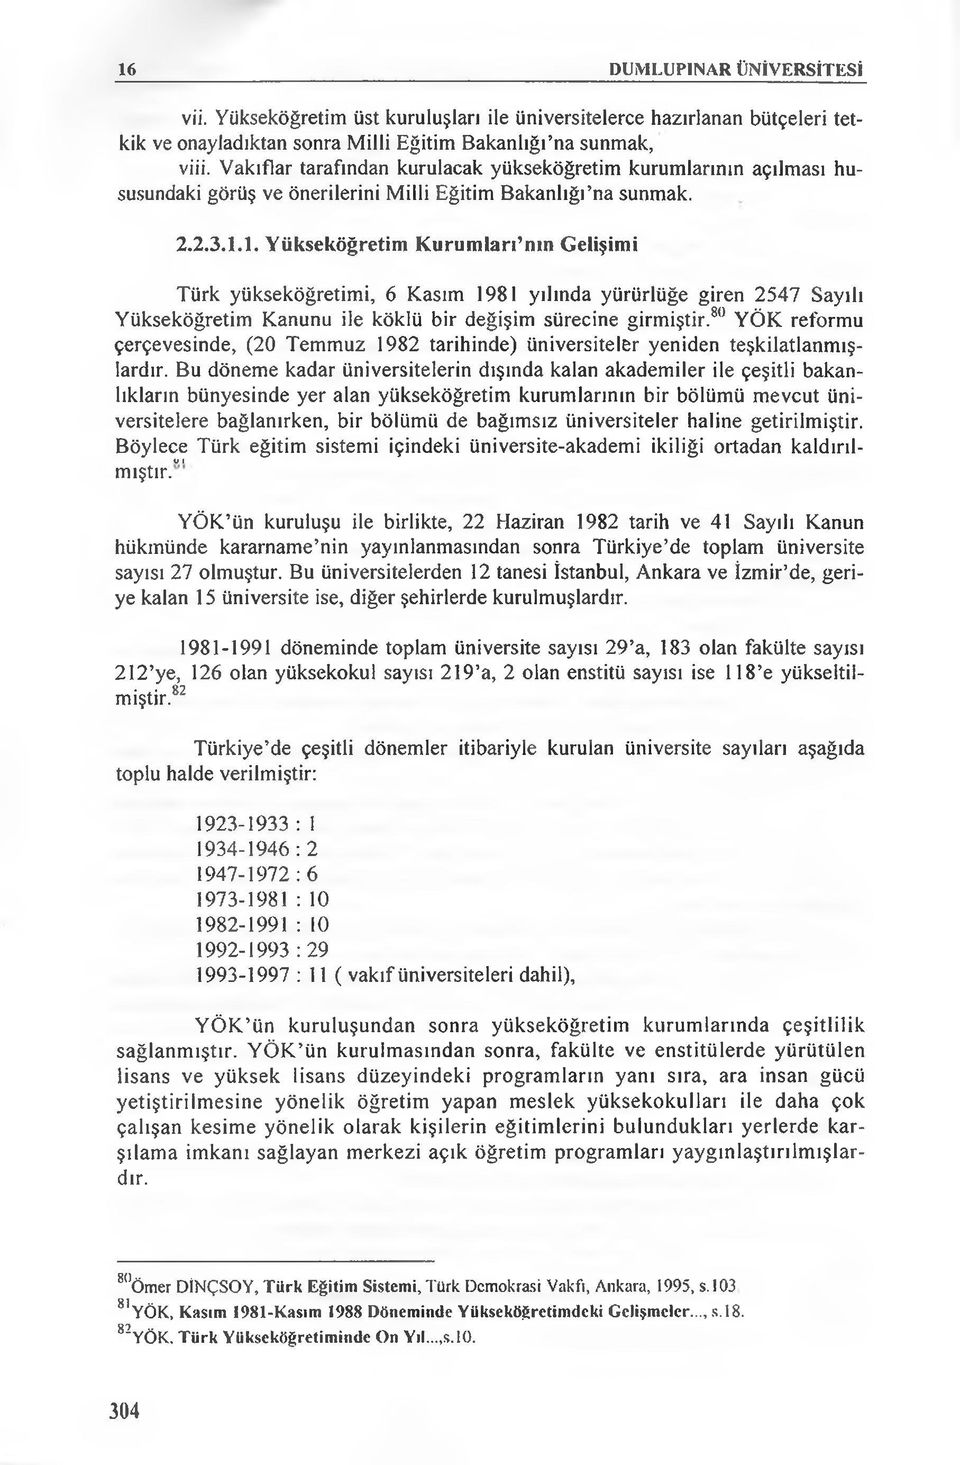 I. Yükseköğretim Kurumları nm Gelişimi Türk yükseköğretimi, 6 Kasım 1981 yılında yürürlüğe giren 2547 Sayılı Yükseköğretim Kanunu ile köklü bir değişim sürecine girmiştir.